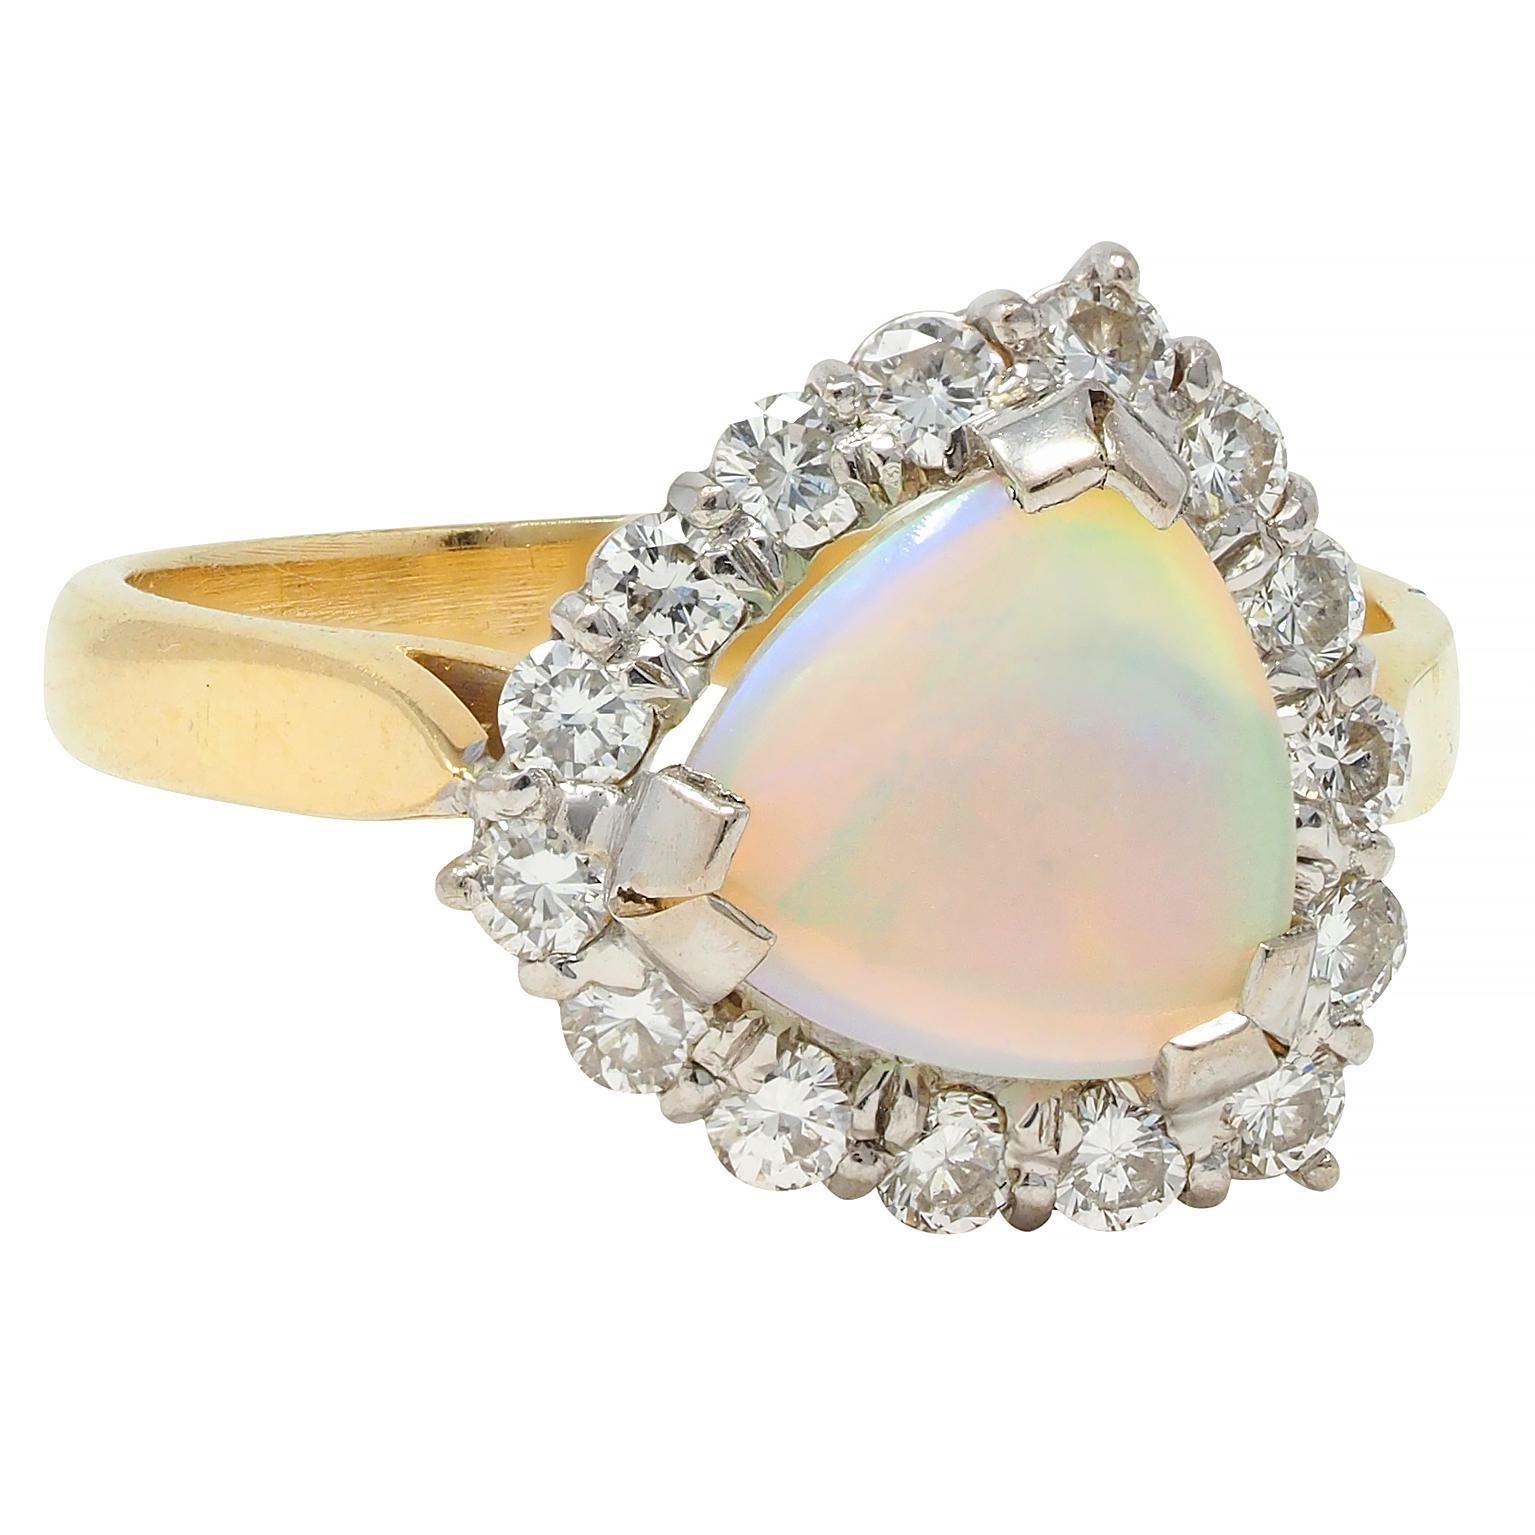 Centrage d'un cabochon d'opale en forme de triangle mesurant 8,0 x 8,0 mm 
Blanc translucide dans la couleur du corps avec jeu de couleurs spectrales
Tête en or blanc, sertie à la main et entourée d'un halo. 
Composé de diamants ronds de taille